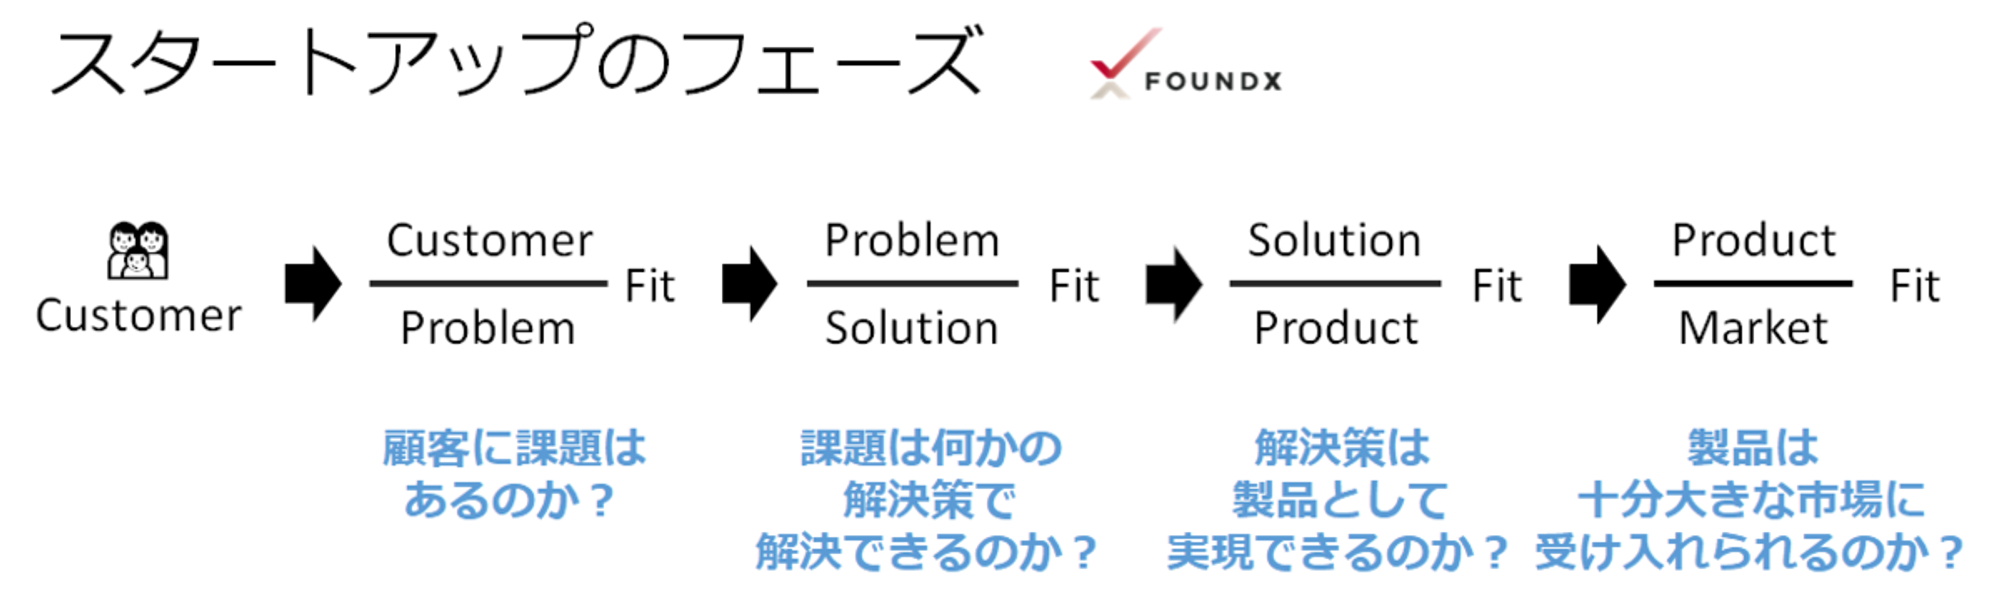 スタートアップ・フィット・ジャーニー　今どの段階にいて、何に取り組むべきかのガイド - FoundX Review - 起業家とスタートアップのためのノウハウ情報